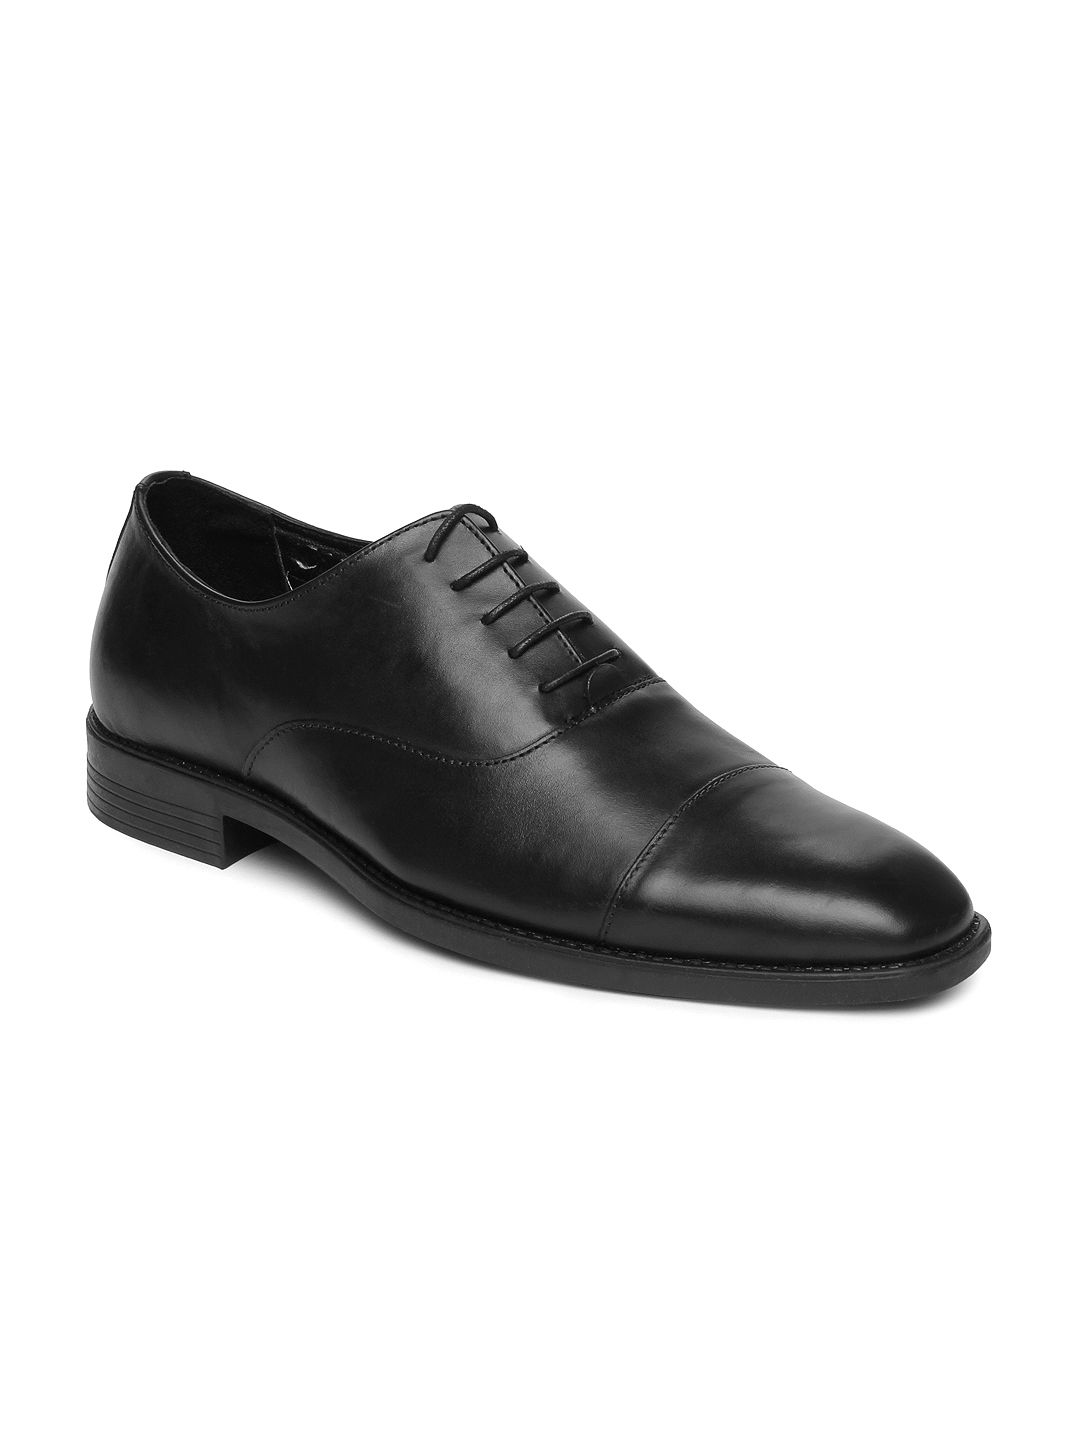 Buy Van Heusen Men Black Leather Oxford Formal Shoes - 633 - Footwear ...